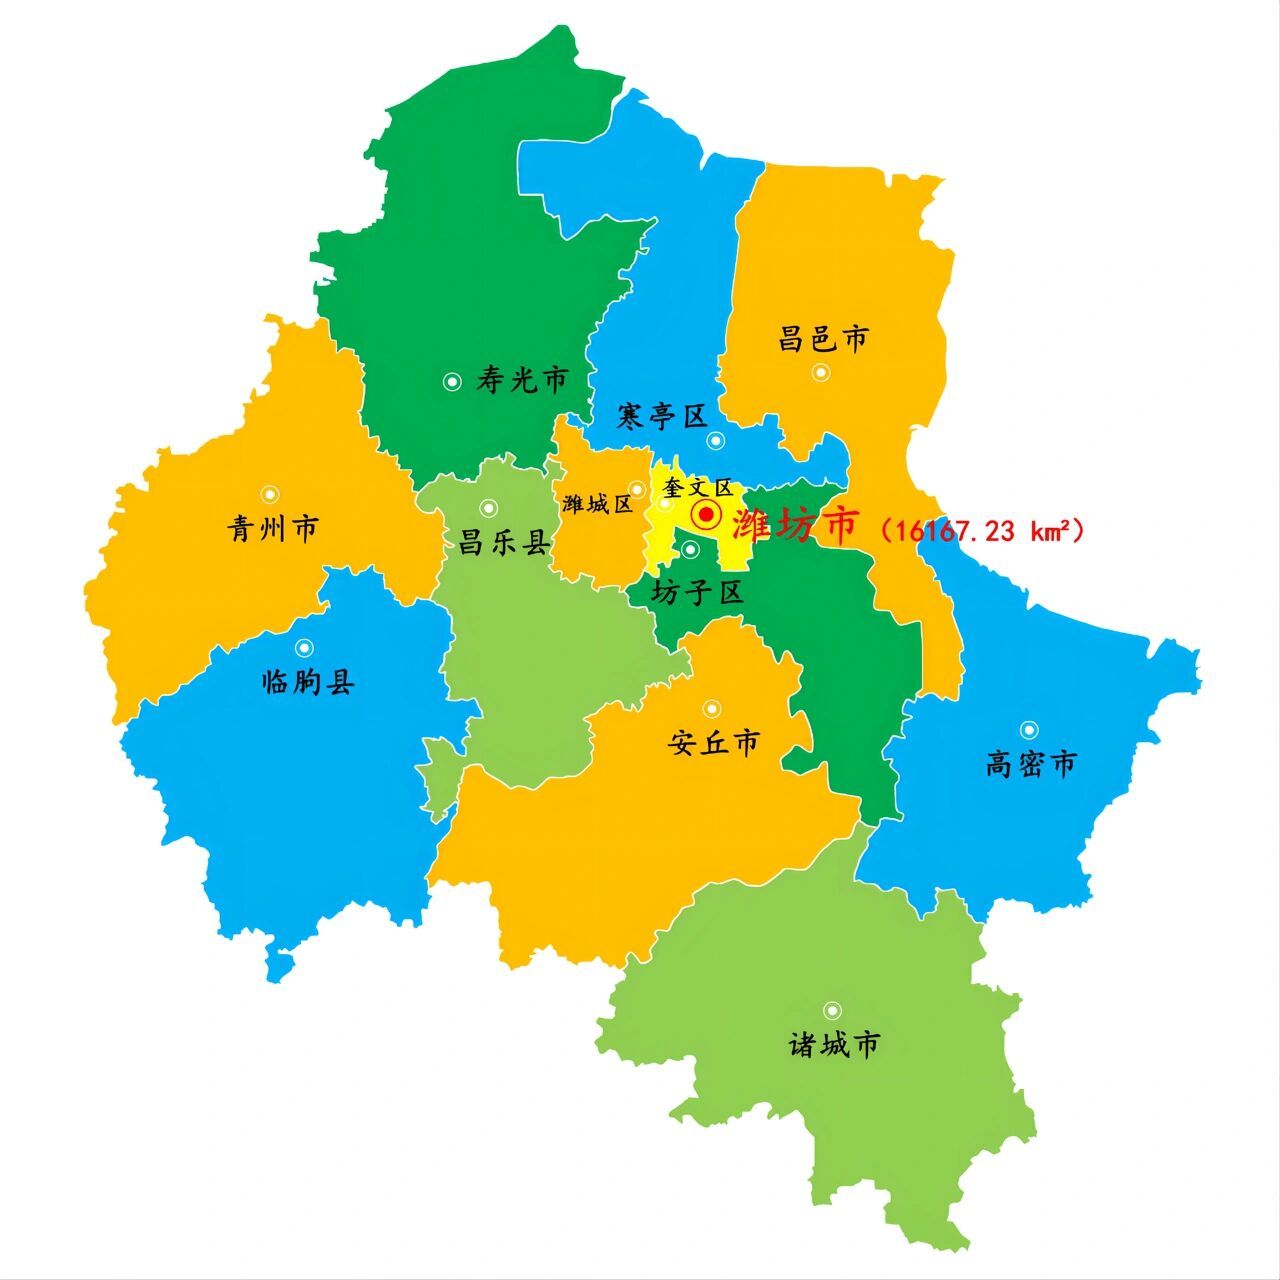 山东·潍坊市景区景点106个1/3 下辖: 4个市辖区:奎文区,潍城区,寒亭